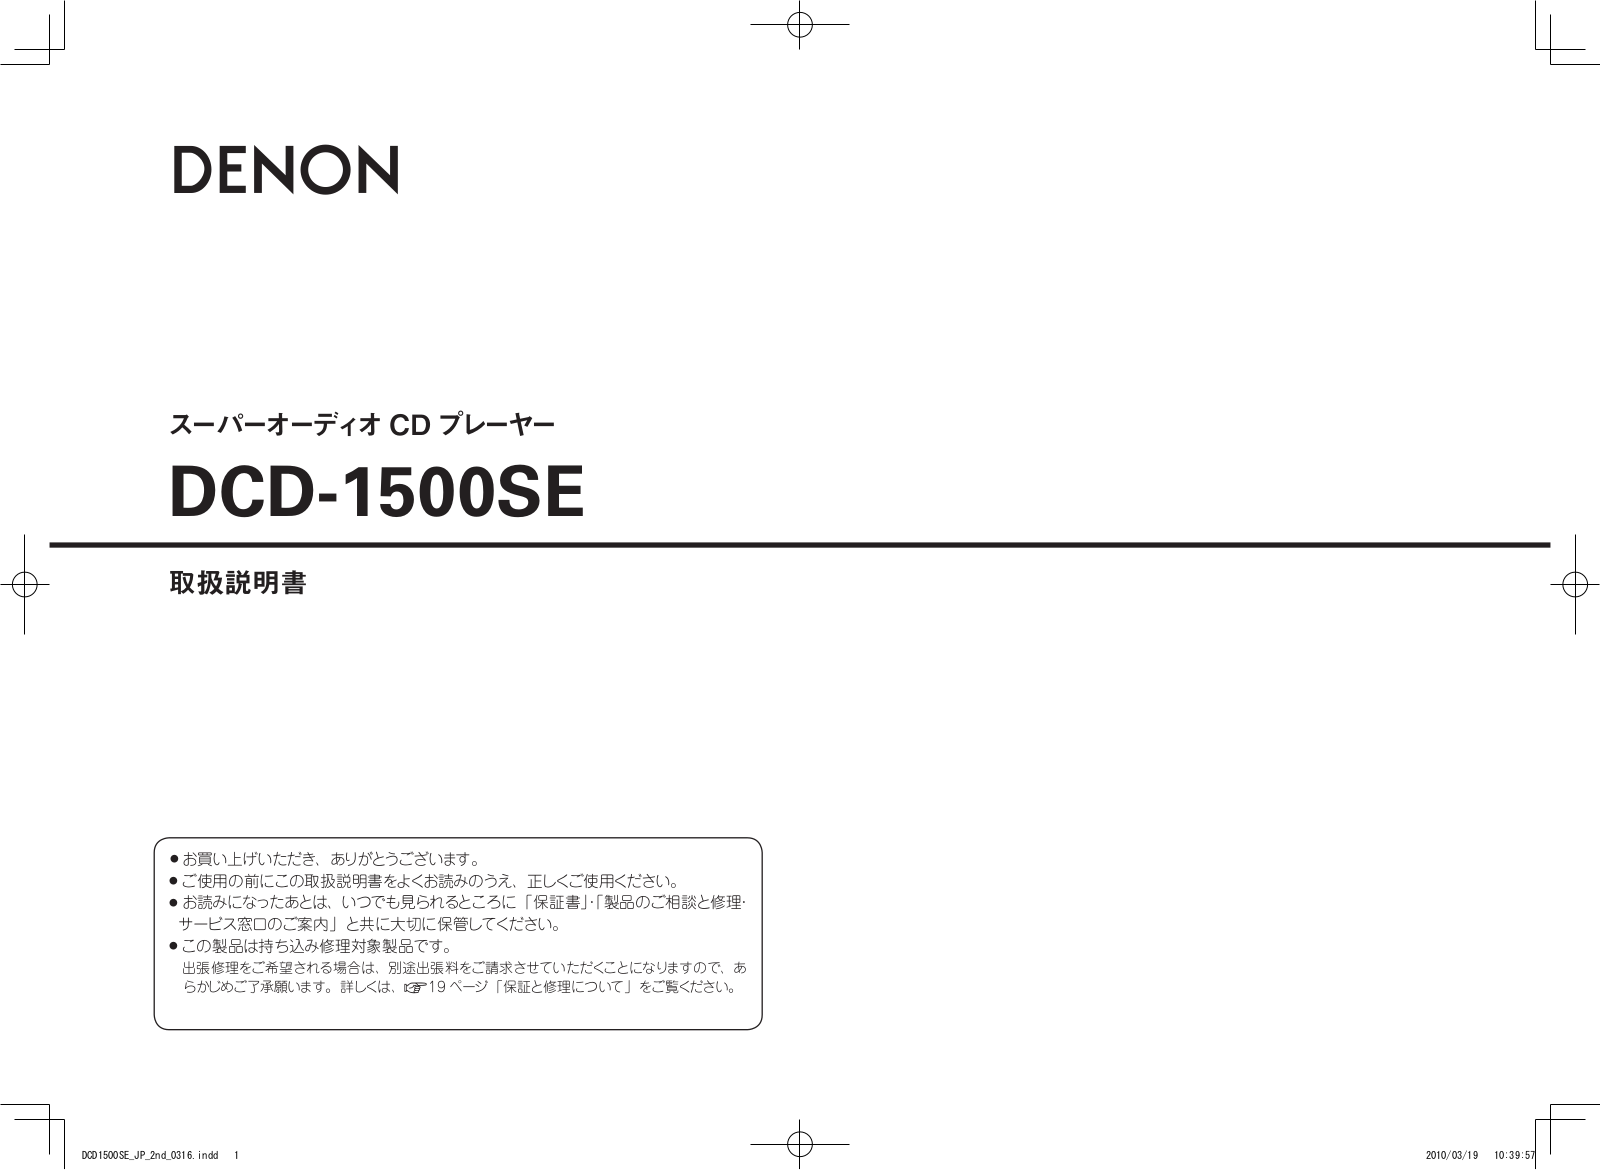 Denon DCD-1500SE Owner's Manual